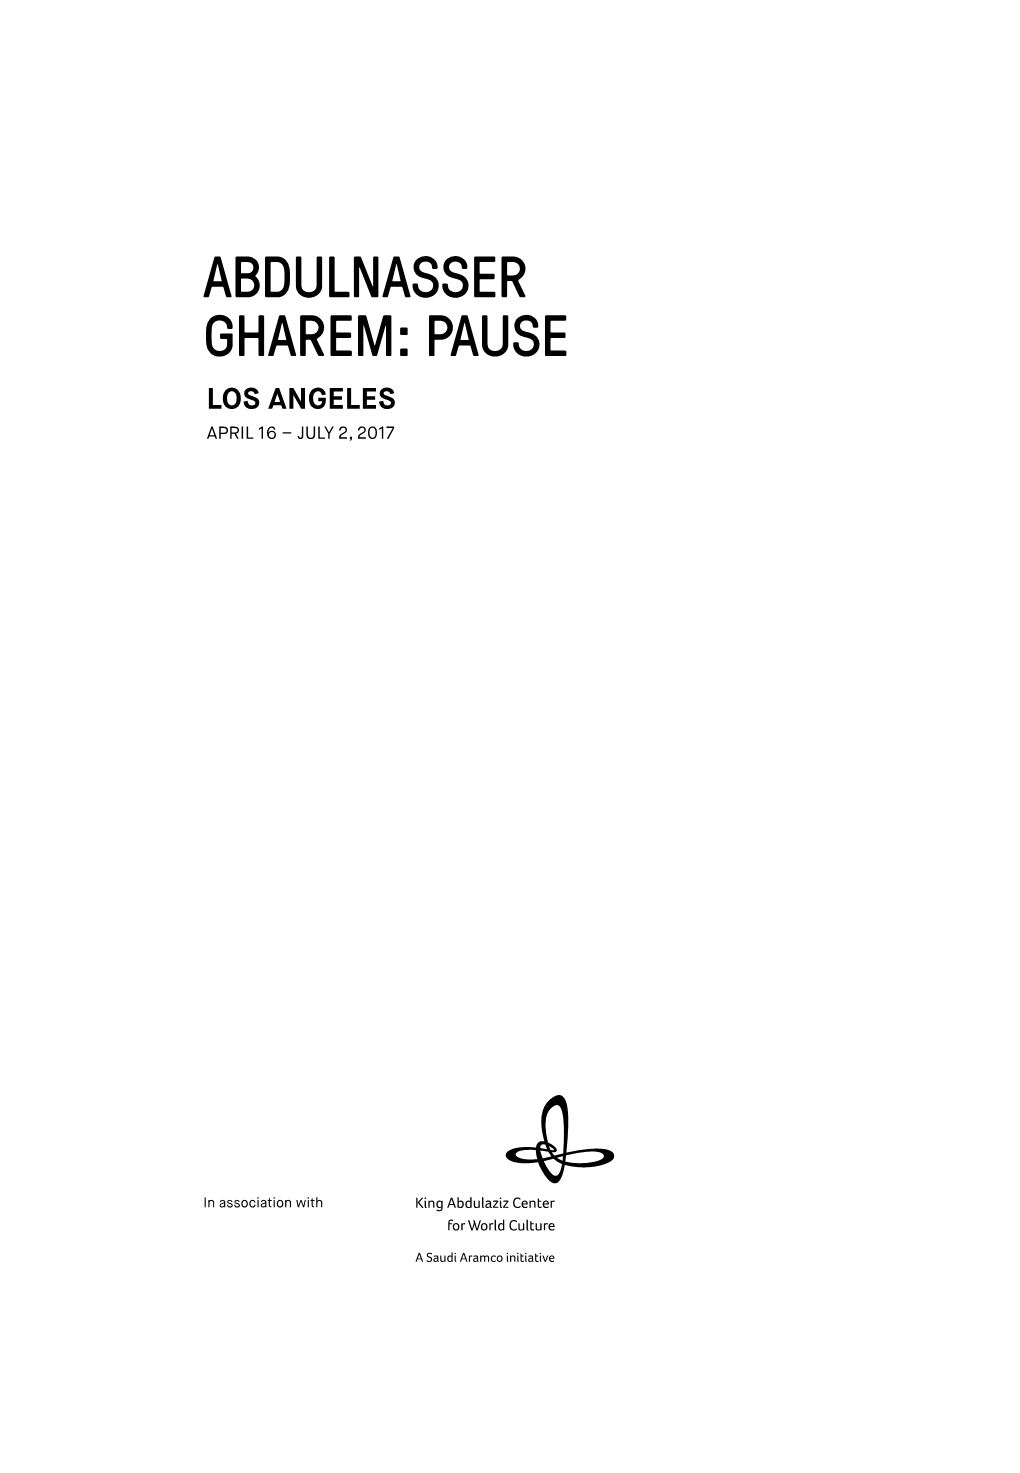 Abdulnasser Gharem: Pause Los Angeles April 16 – July 2, 2017